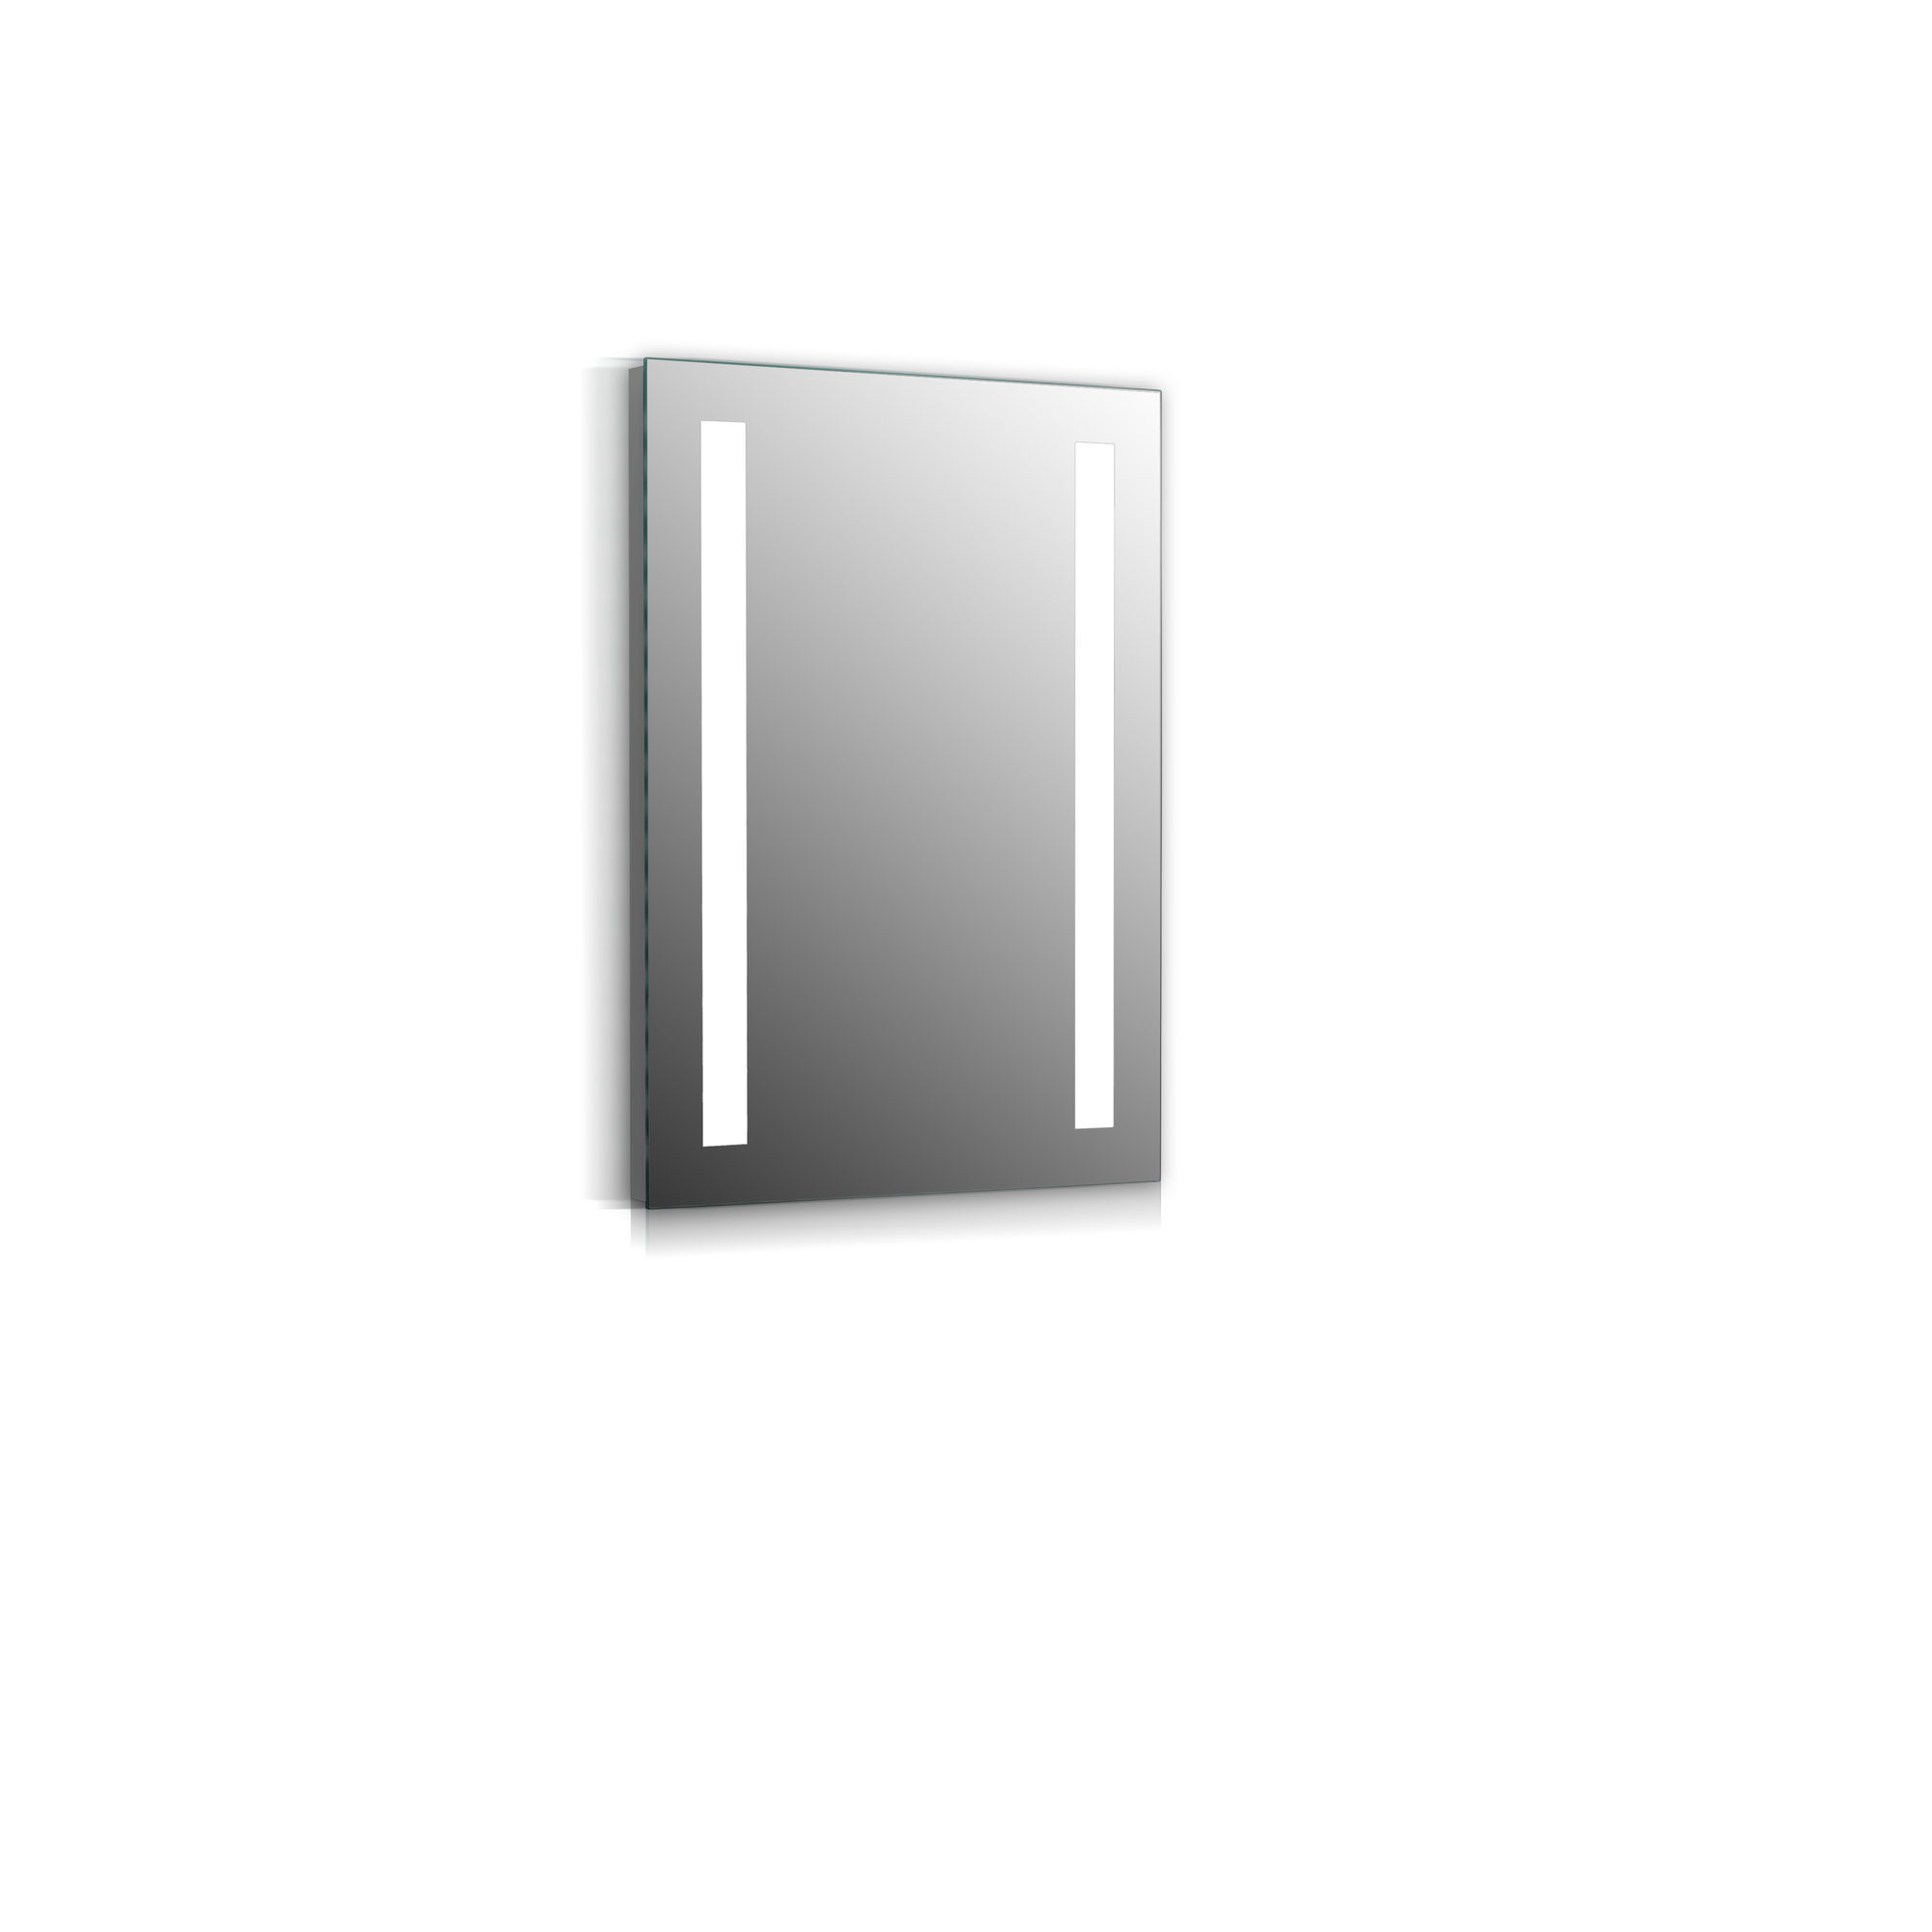 LED-Spiegel 'Marrakesch' mit Kippschalter, 70 x 40 cm + product picture